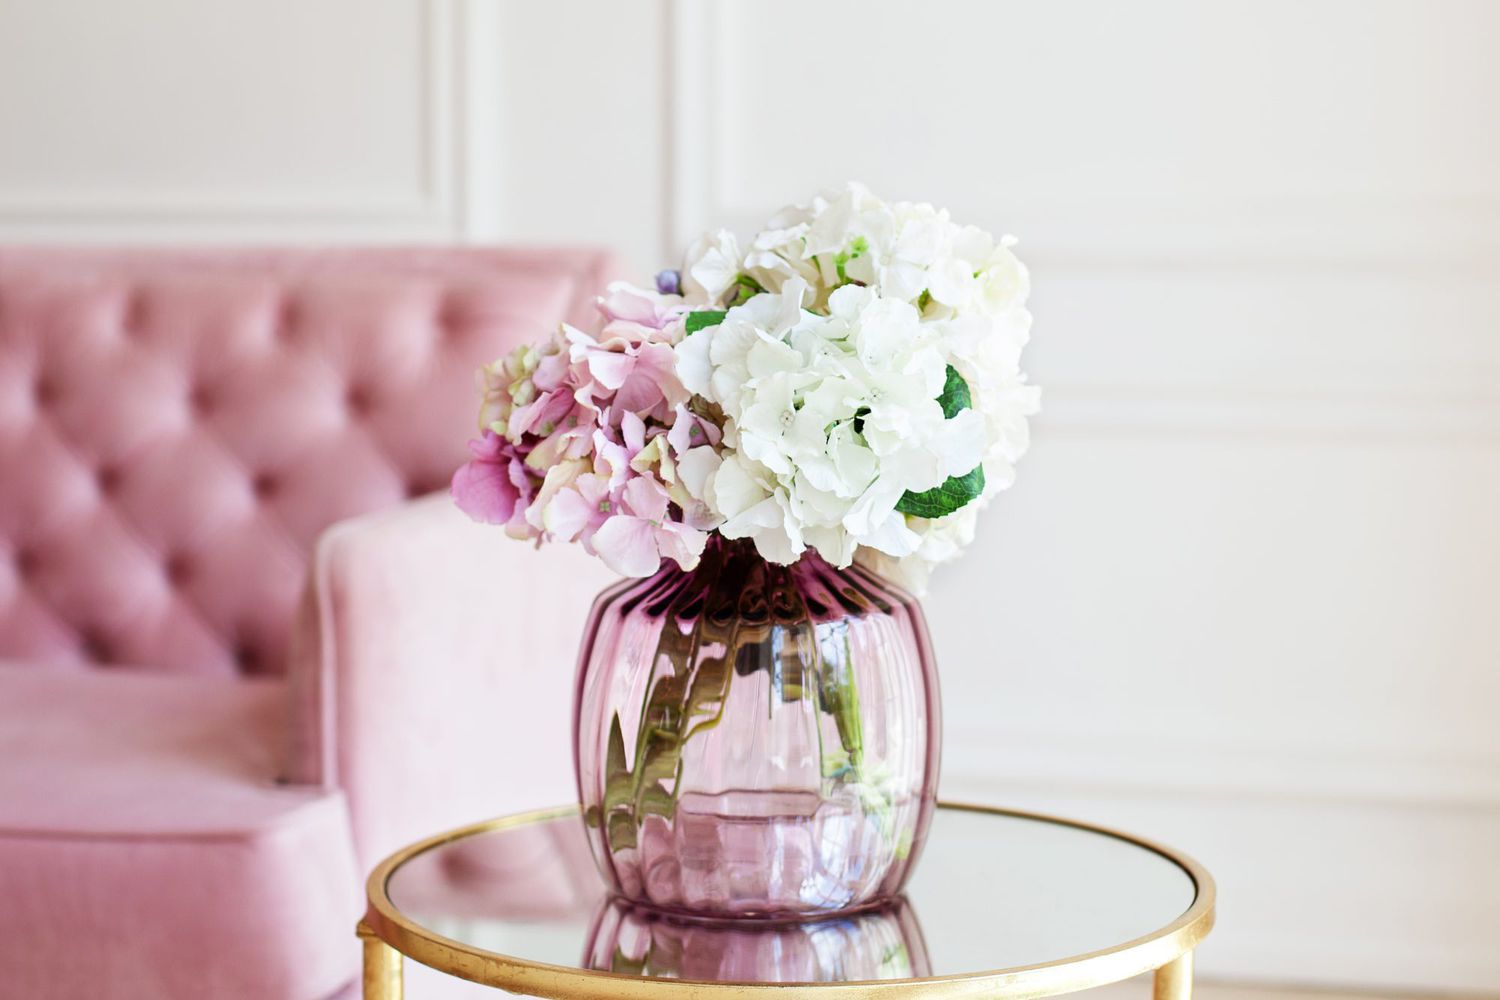 绣球花束安排在粉红色的花瓶